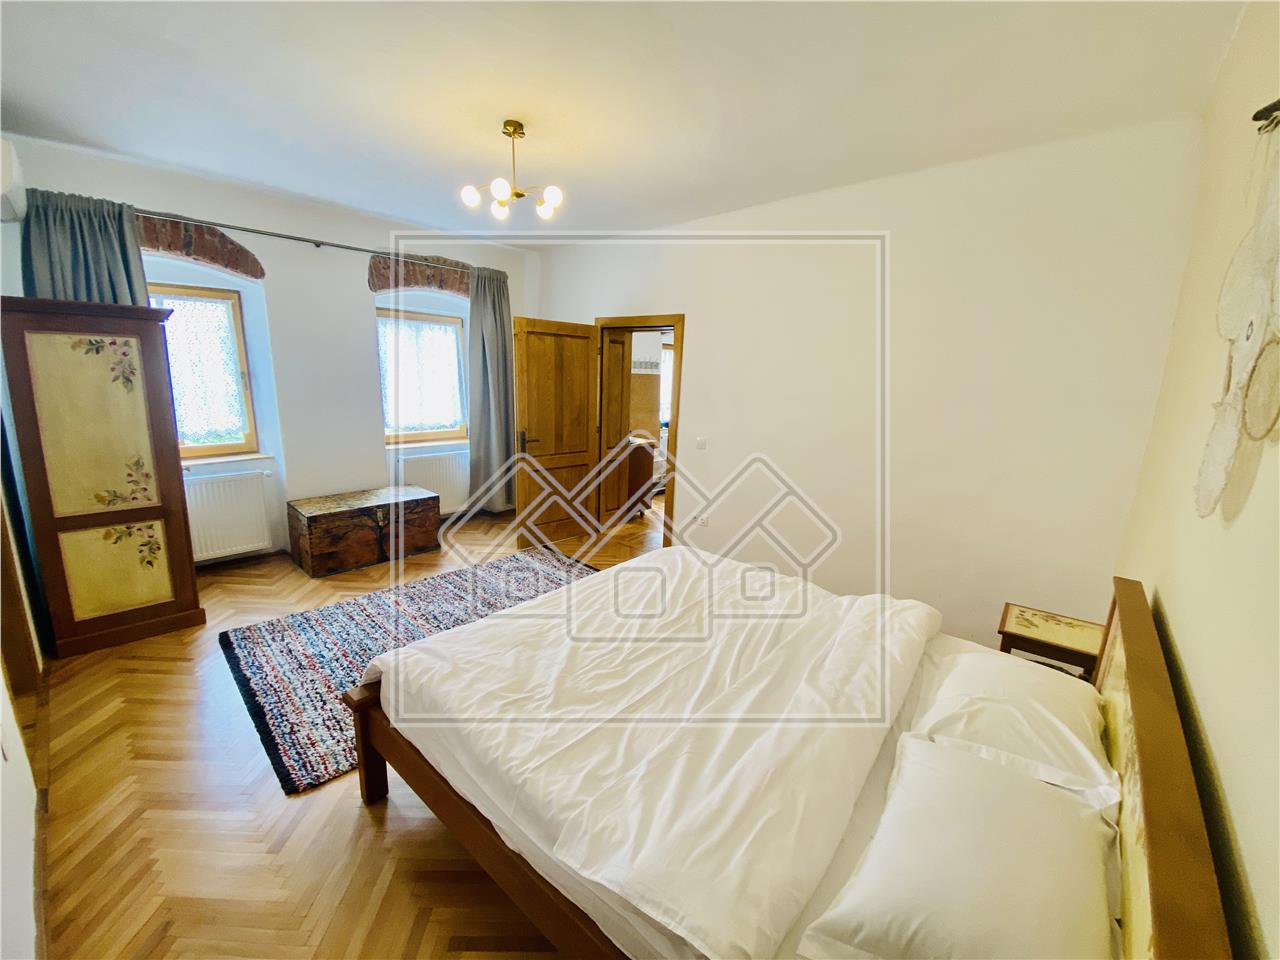 Apartament de vanzare in Sibiu - 2 imobile separate - Zona Centrala